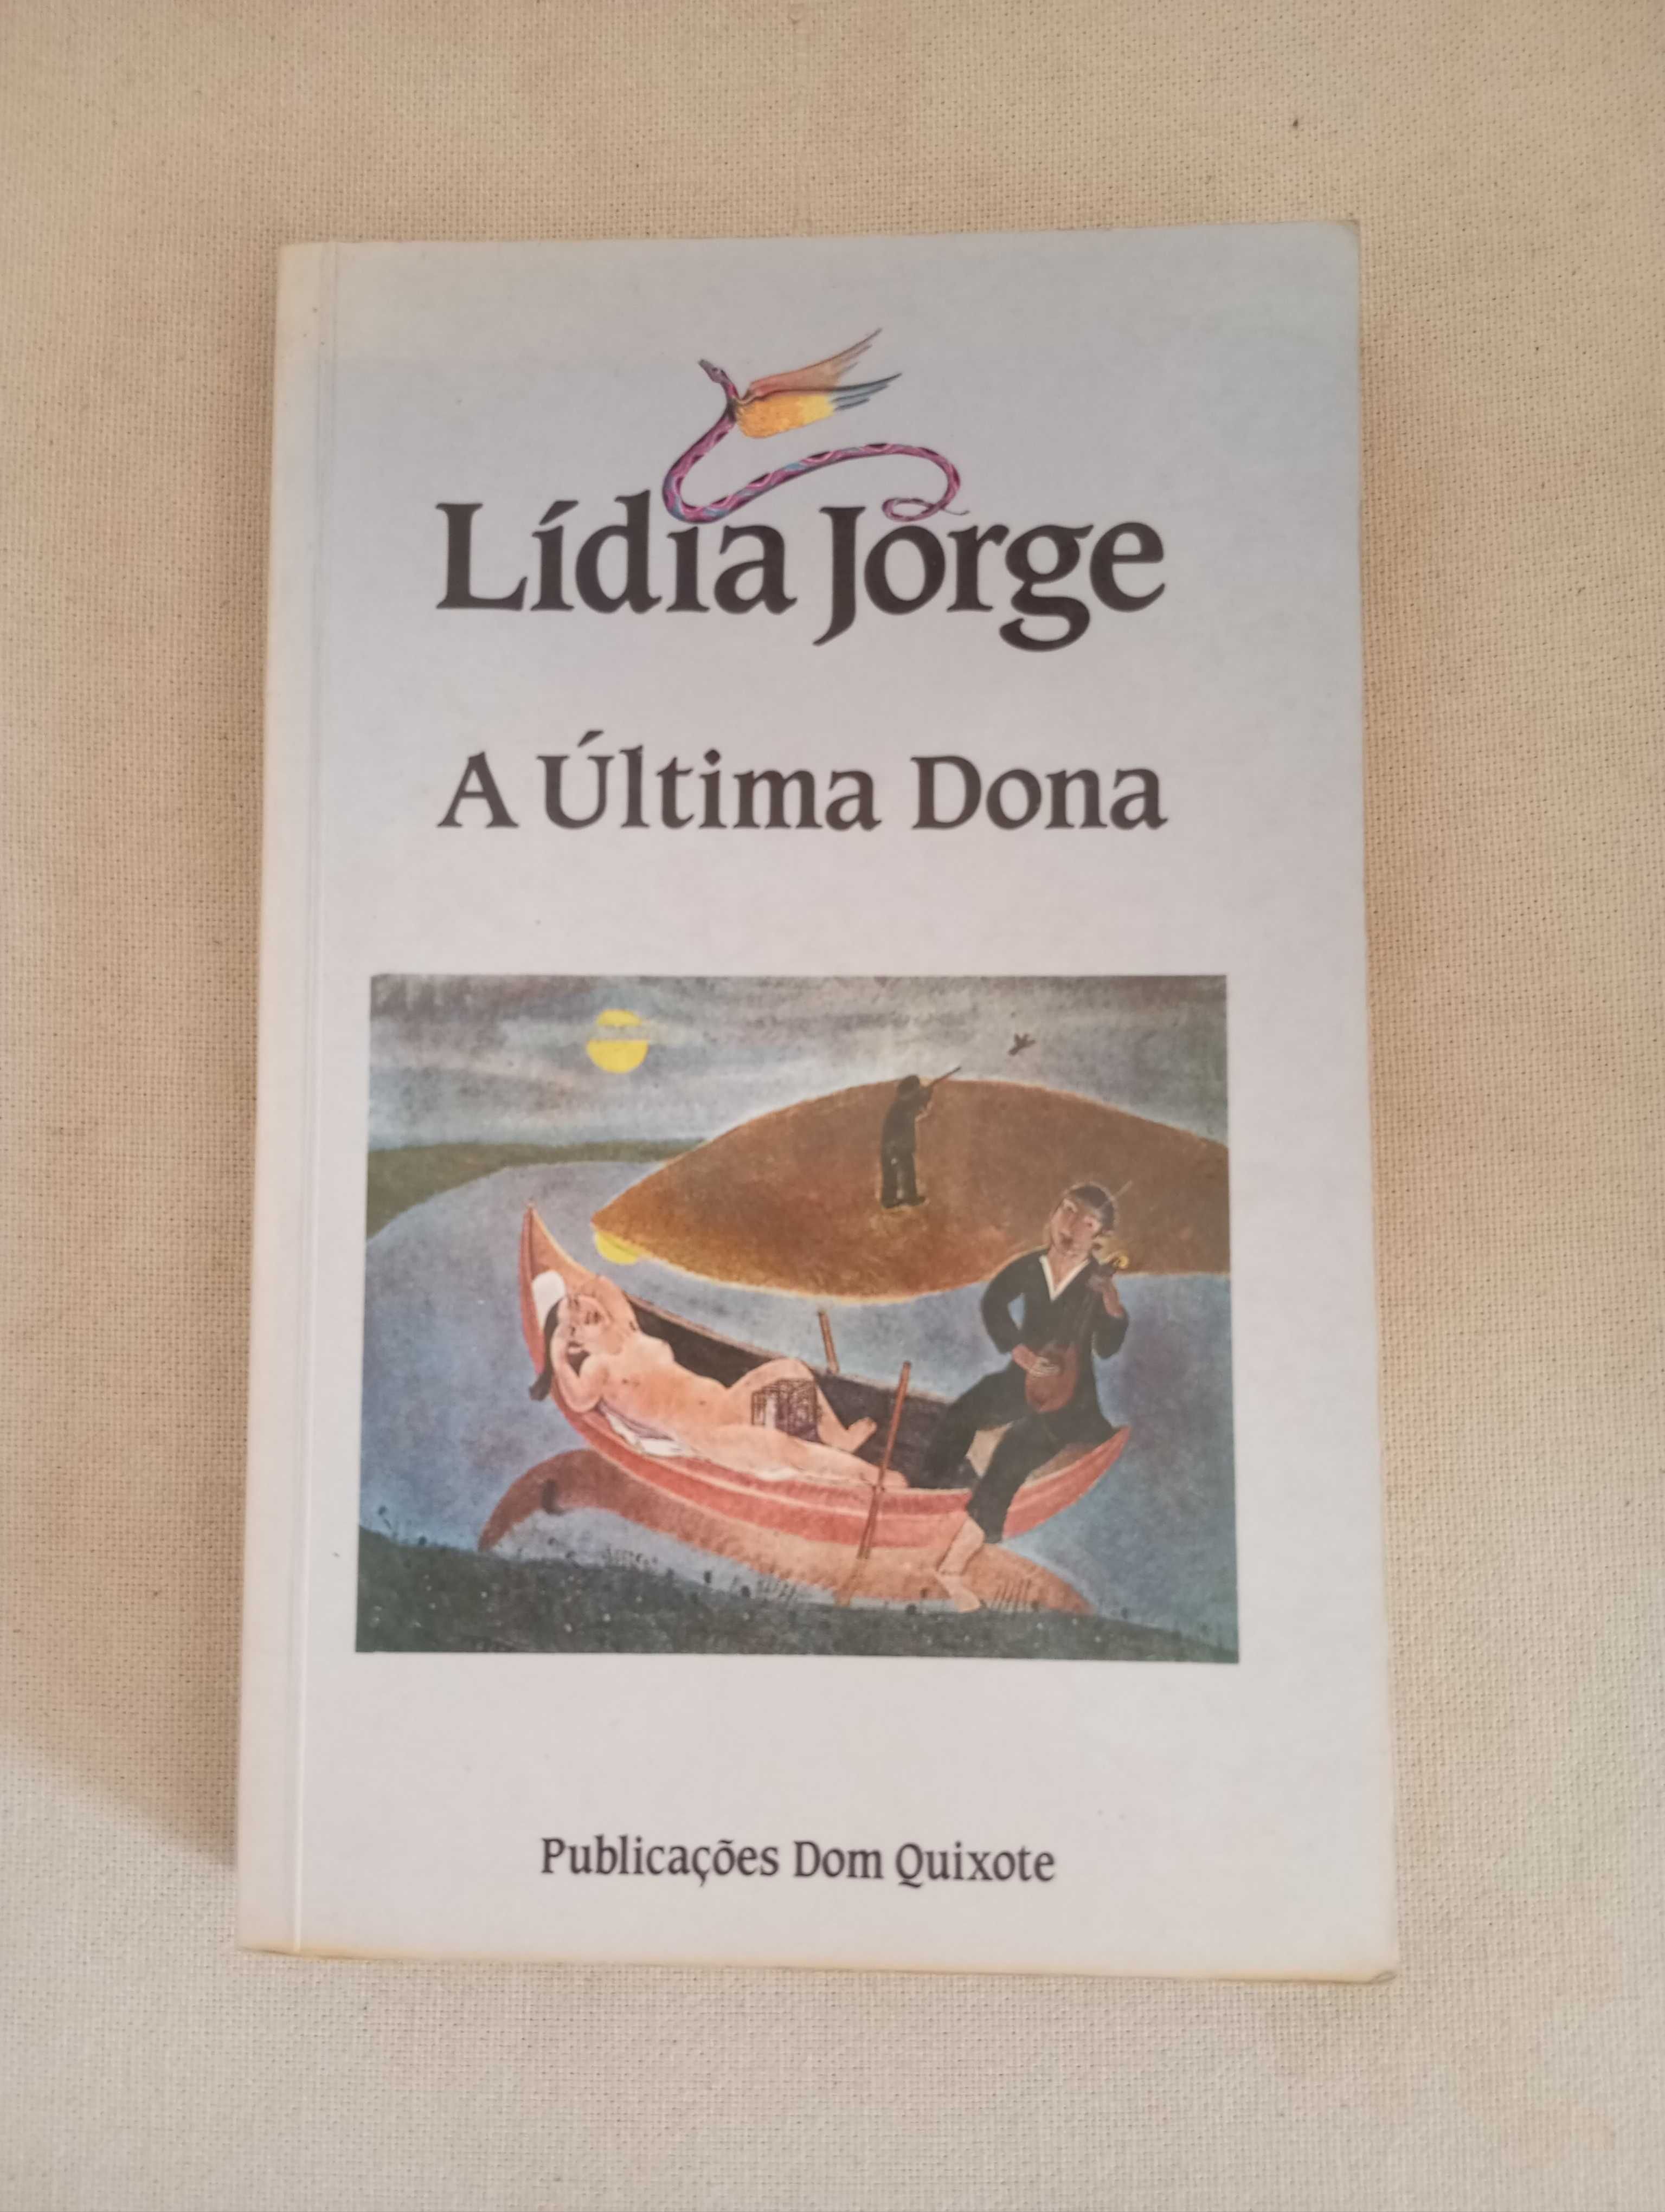 Lídia Jorge - A Última Dona (1.ª Edição)